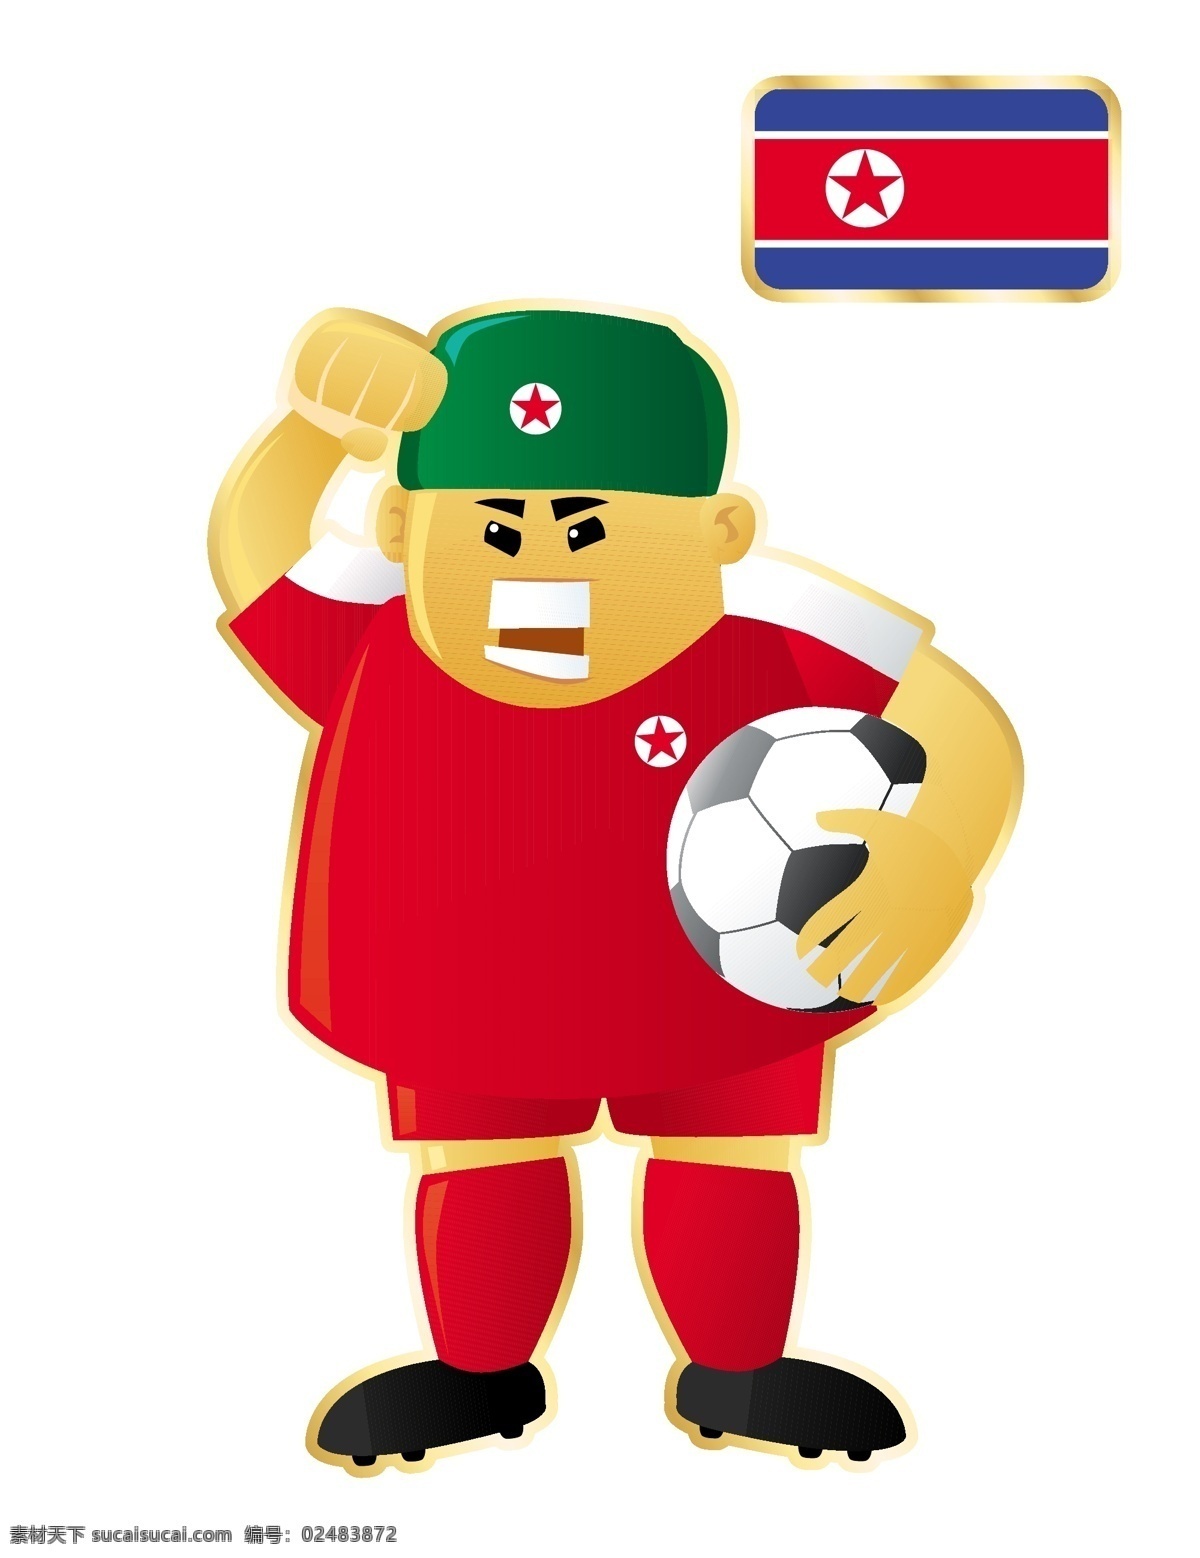 生气 足球 卡通 人物 形象 矢量图 运动员 大胖子 运动 踢球 外国 矢量 扁平化 平面